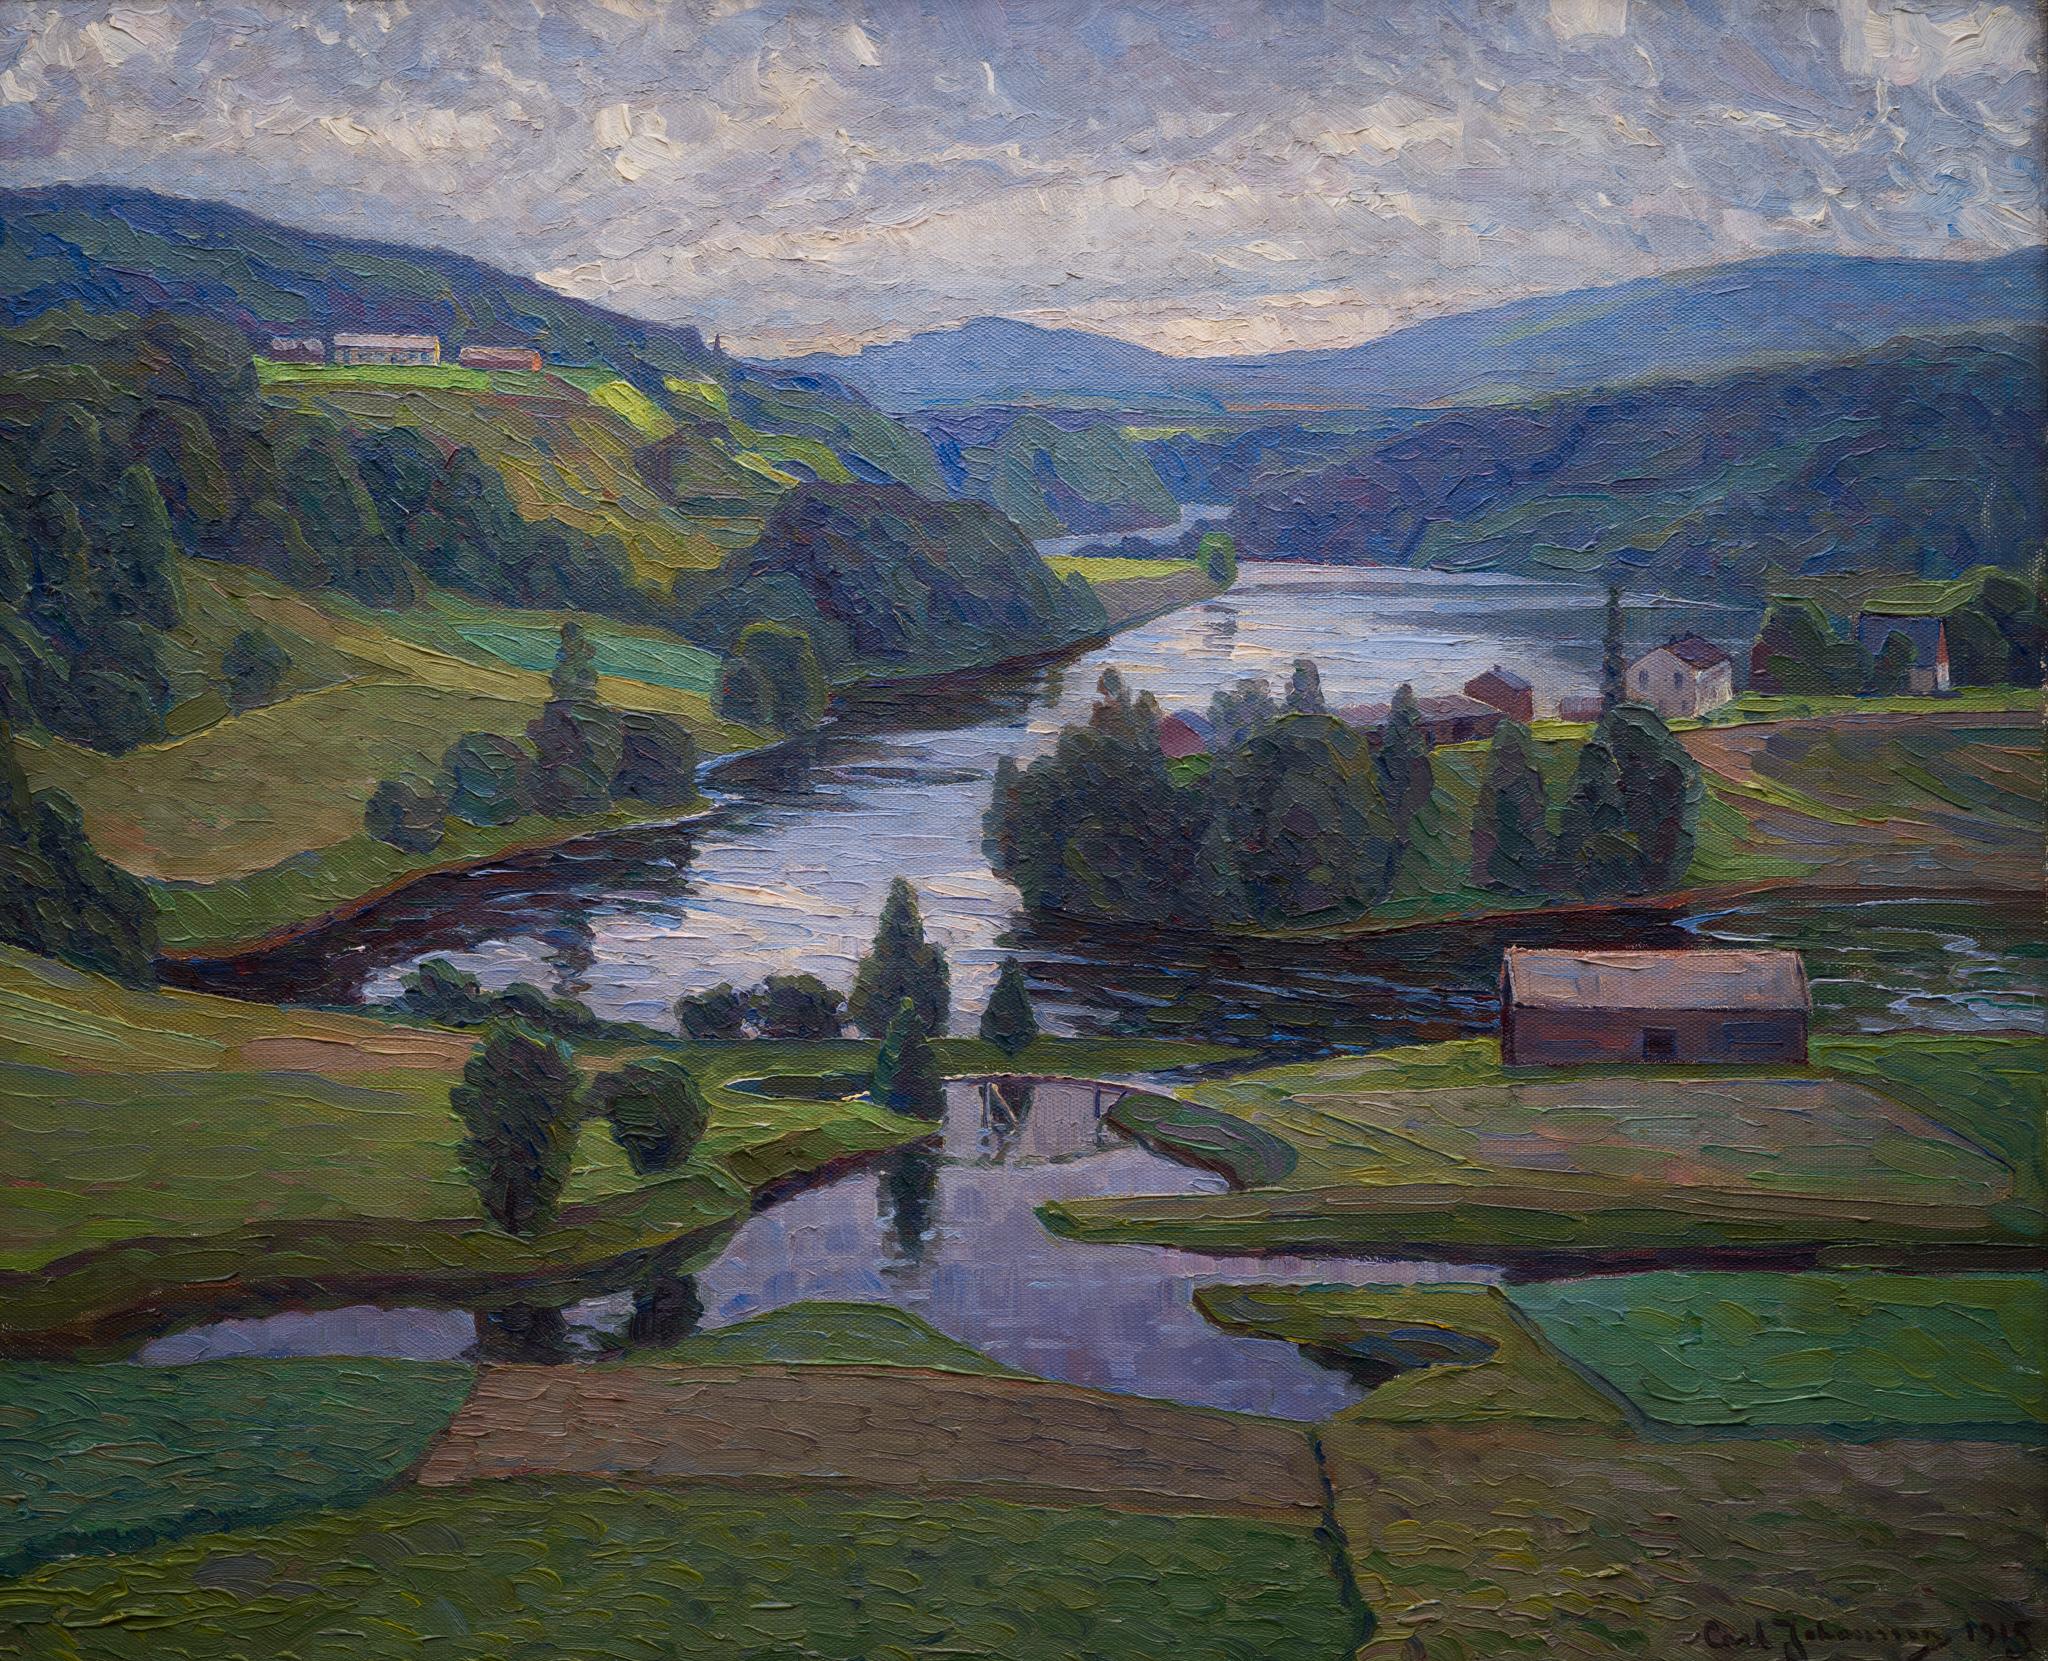 Impressionistische schwedische Landschaftsansicht, Nordingrå, 1915 – Painting von Carl Johansson 